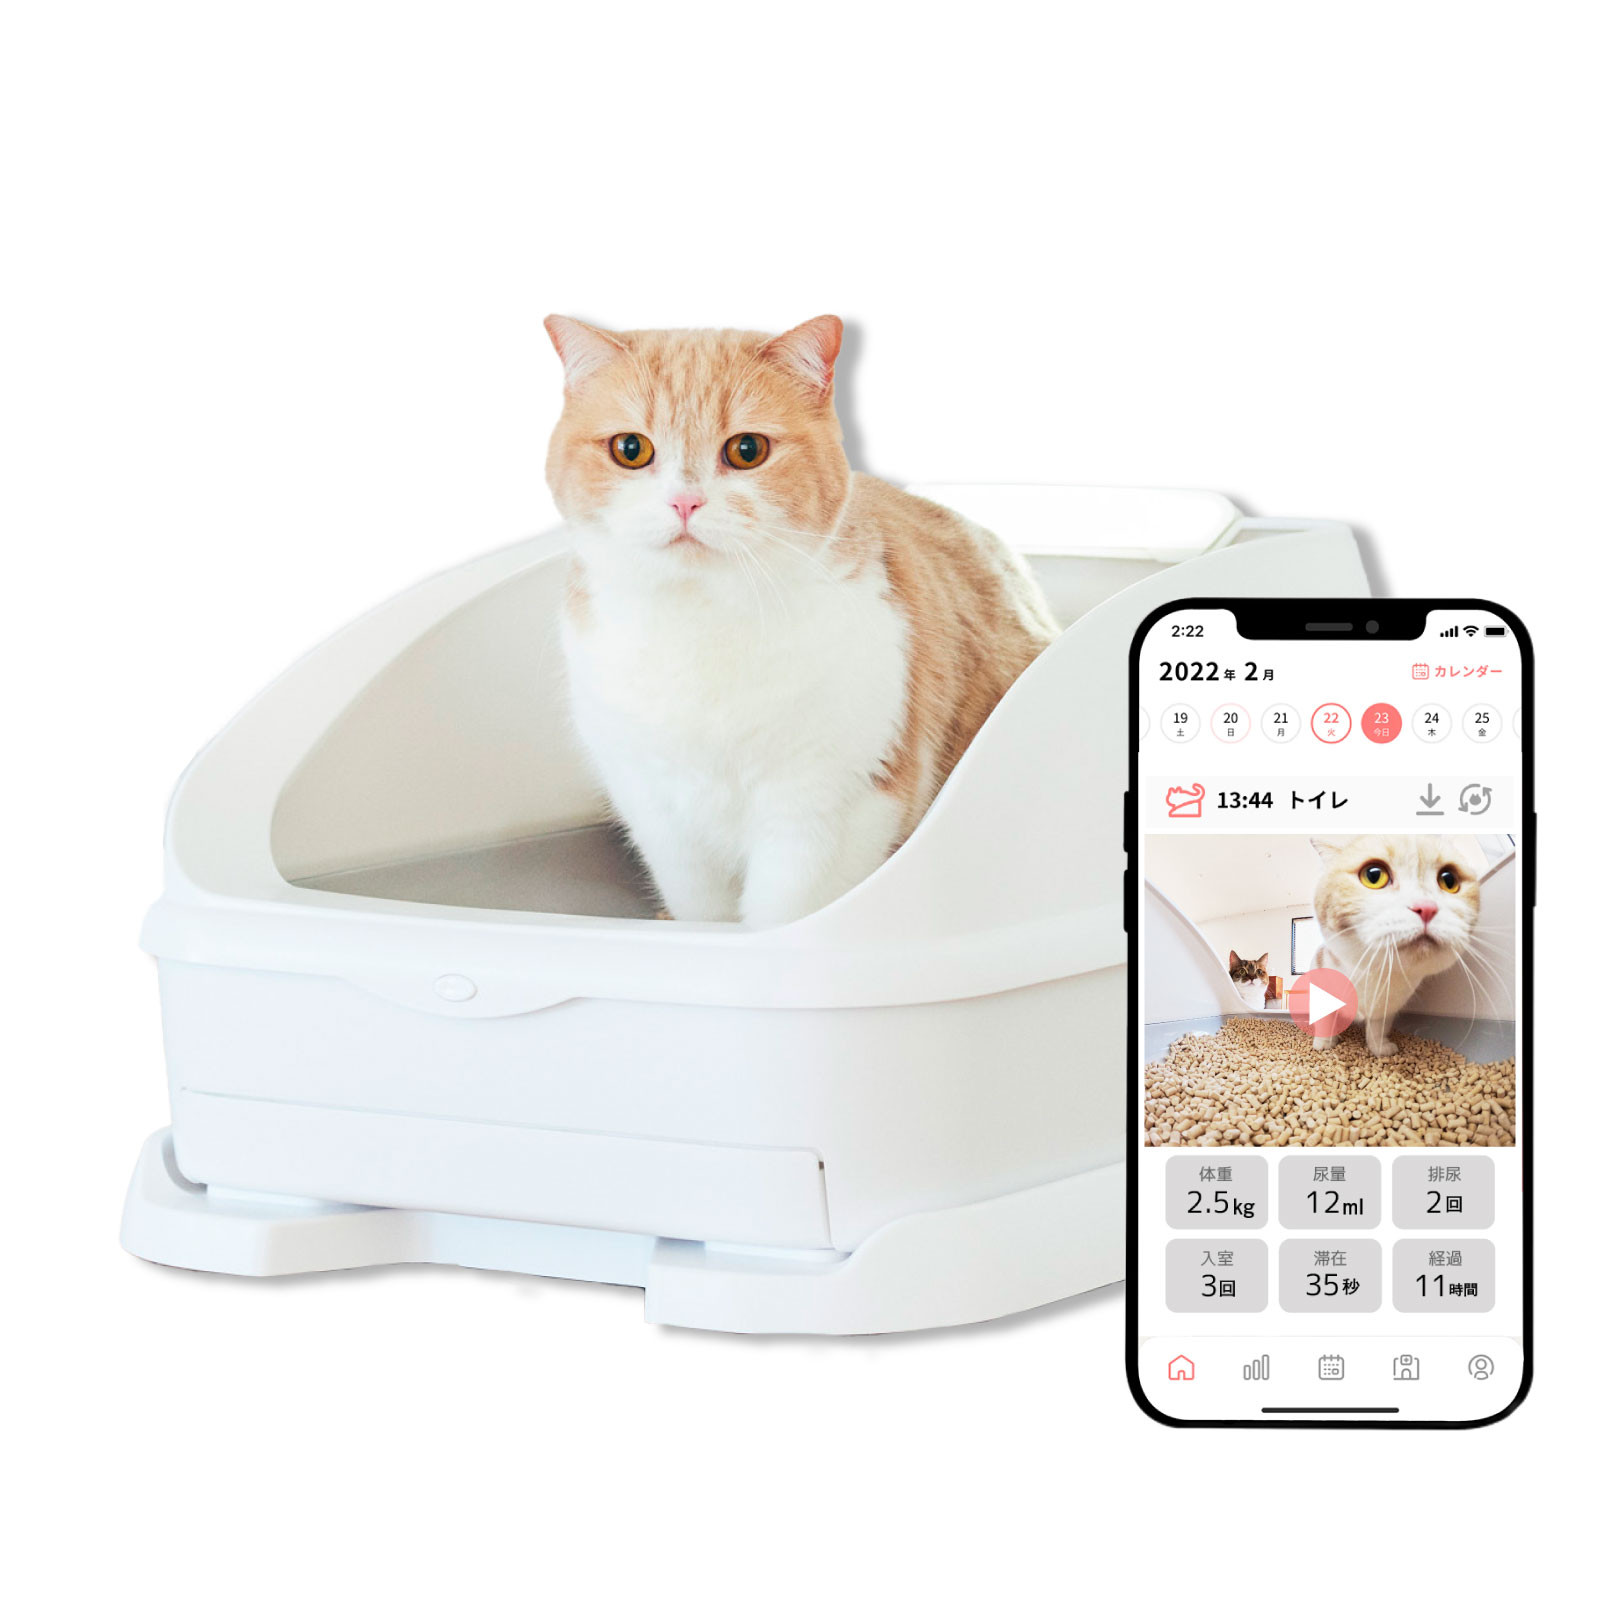 猫トイレ 猫用トイレ 大型 ペット Toletta トレッタ 猫砂 見守りカメラ 